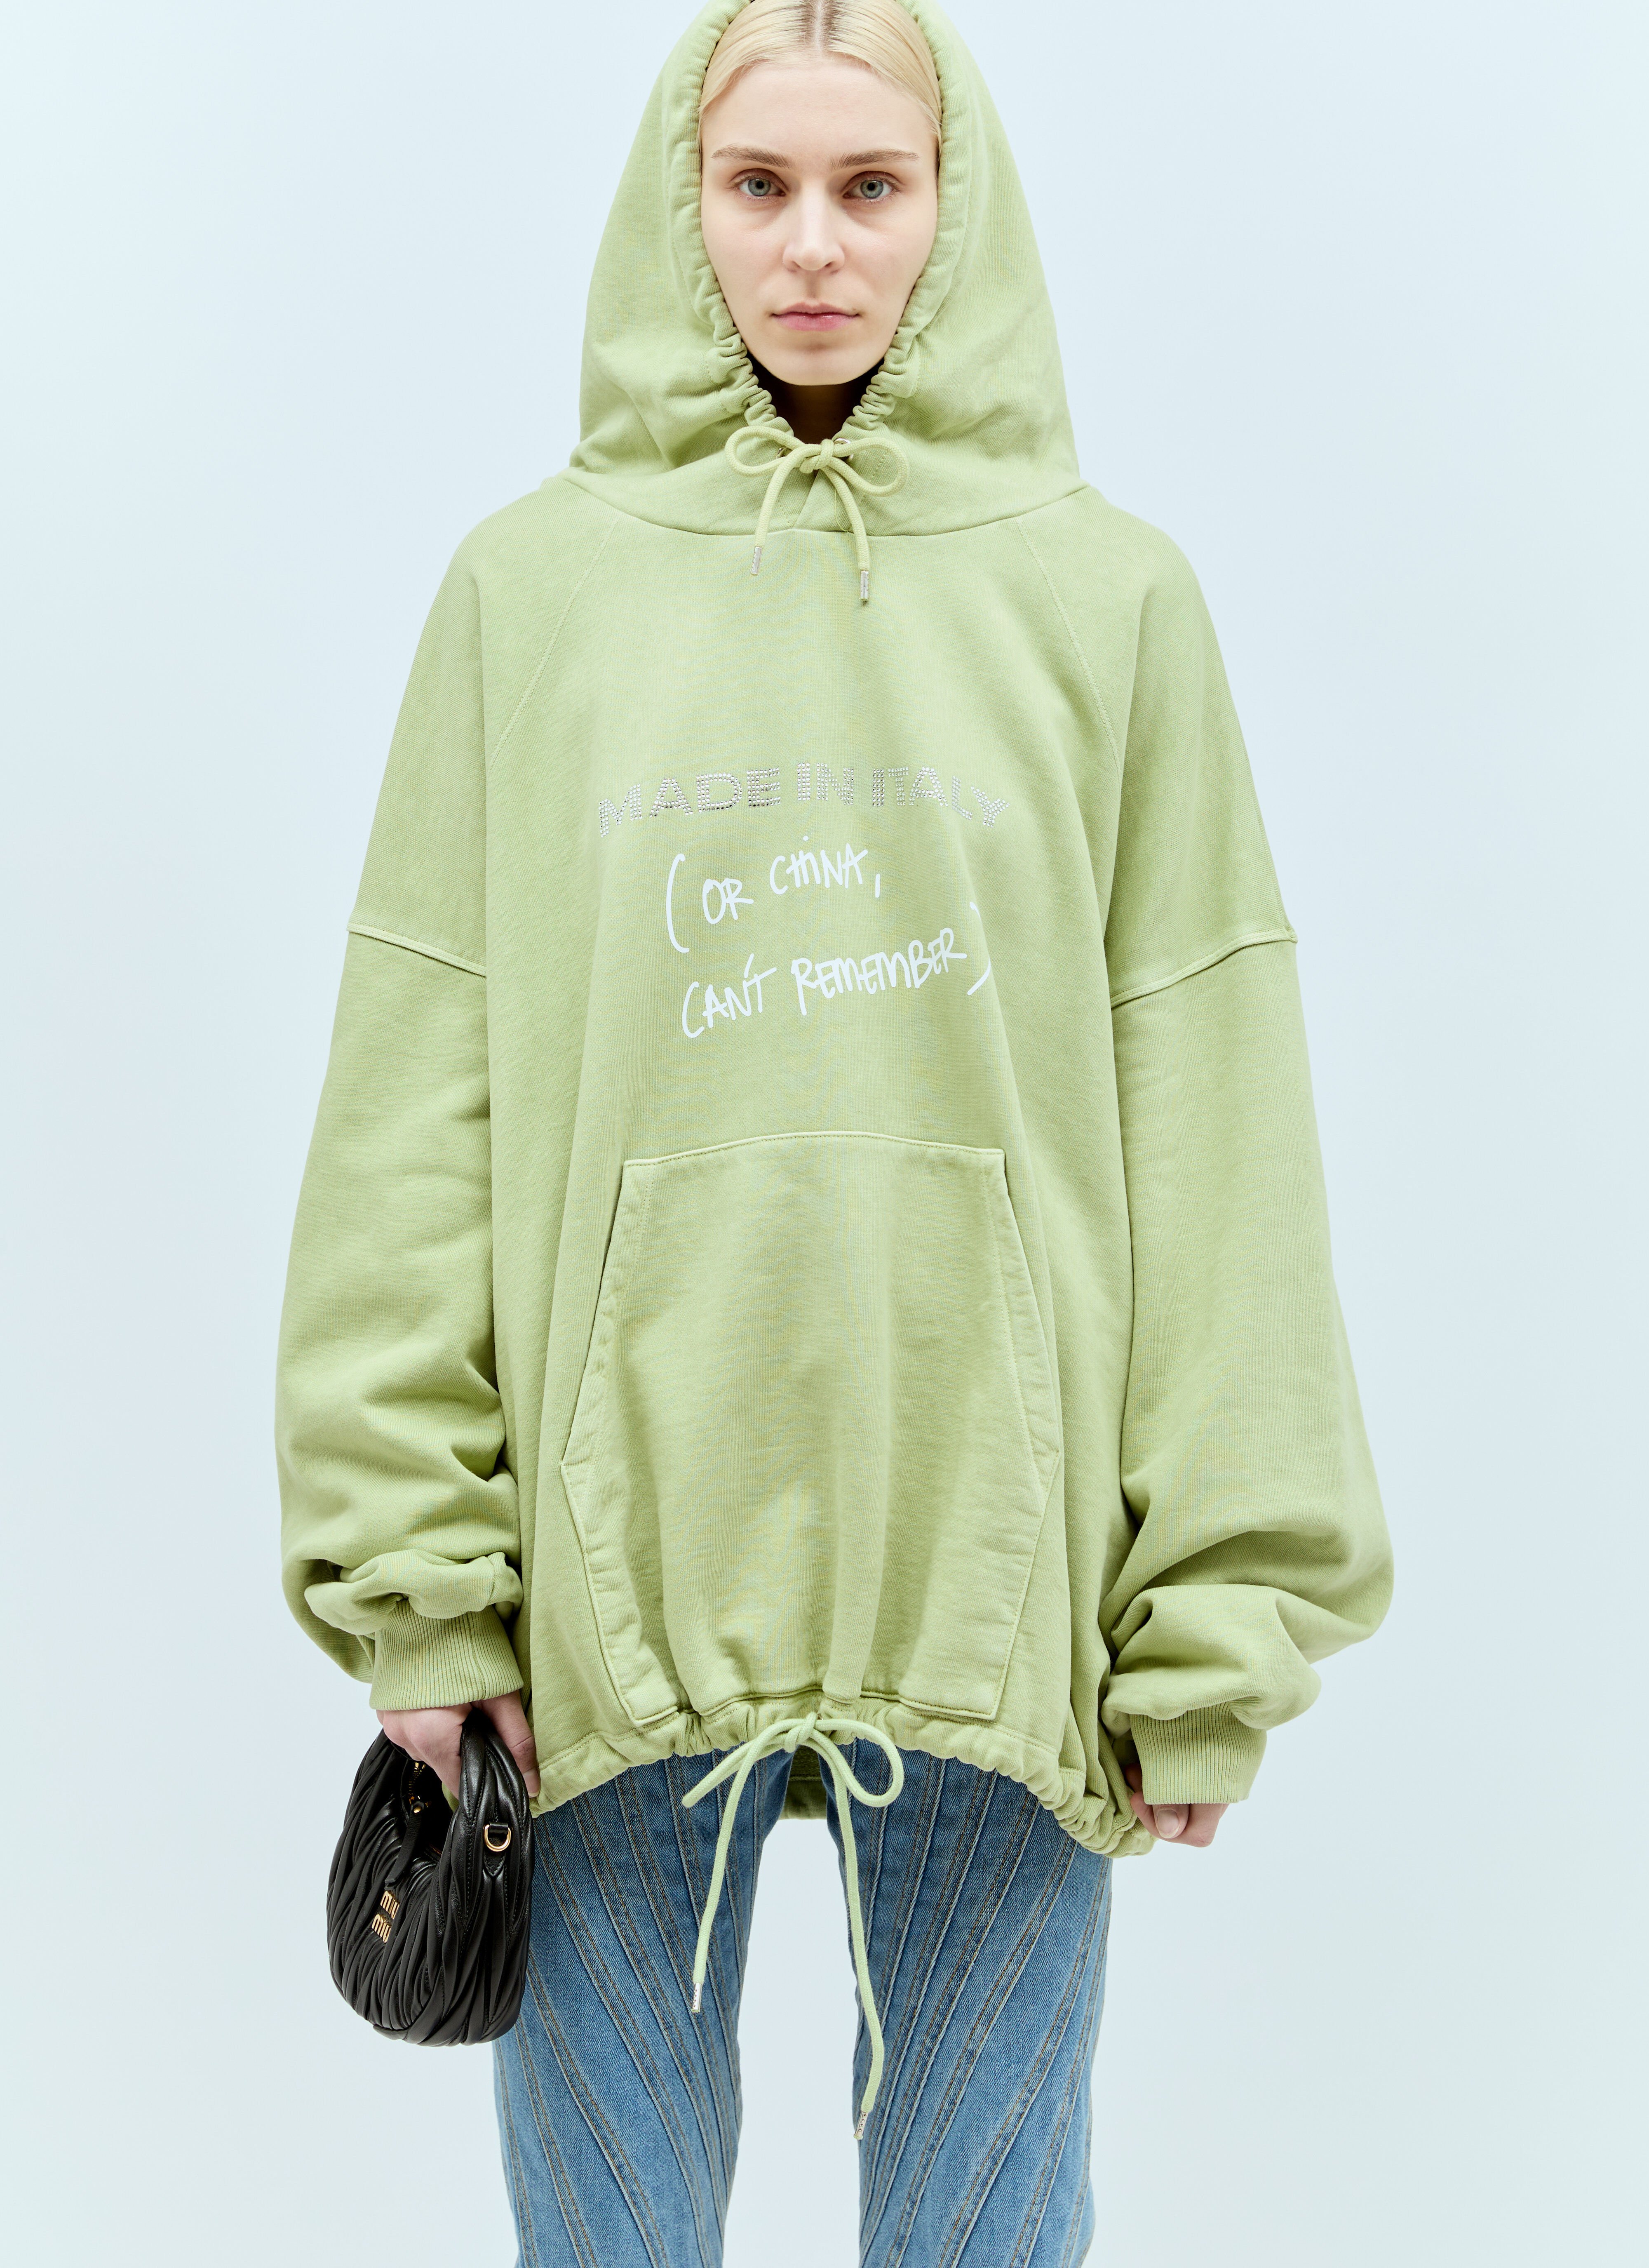 Jil Sander+ Cyrstal Embellished Hooded Sweatshirt Cream jsp0251010